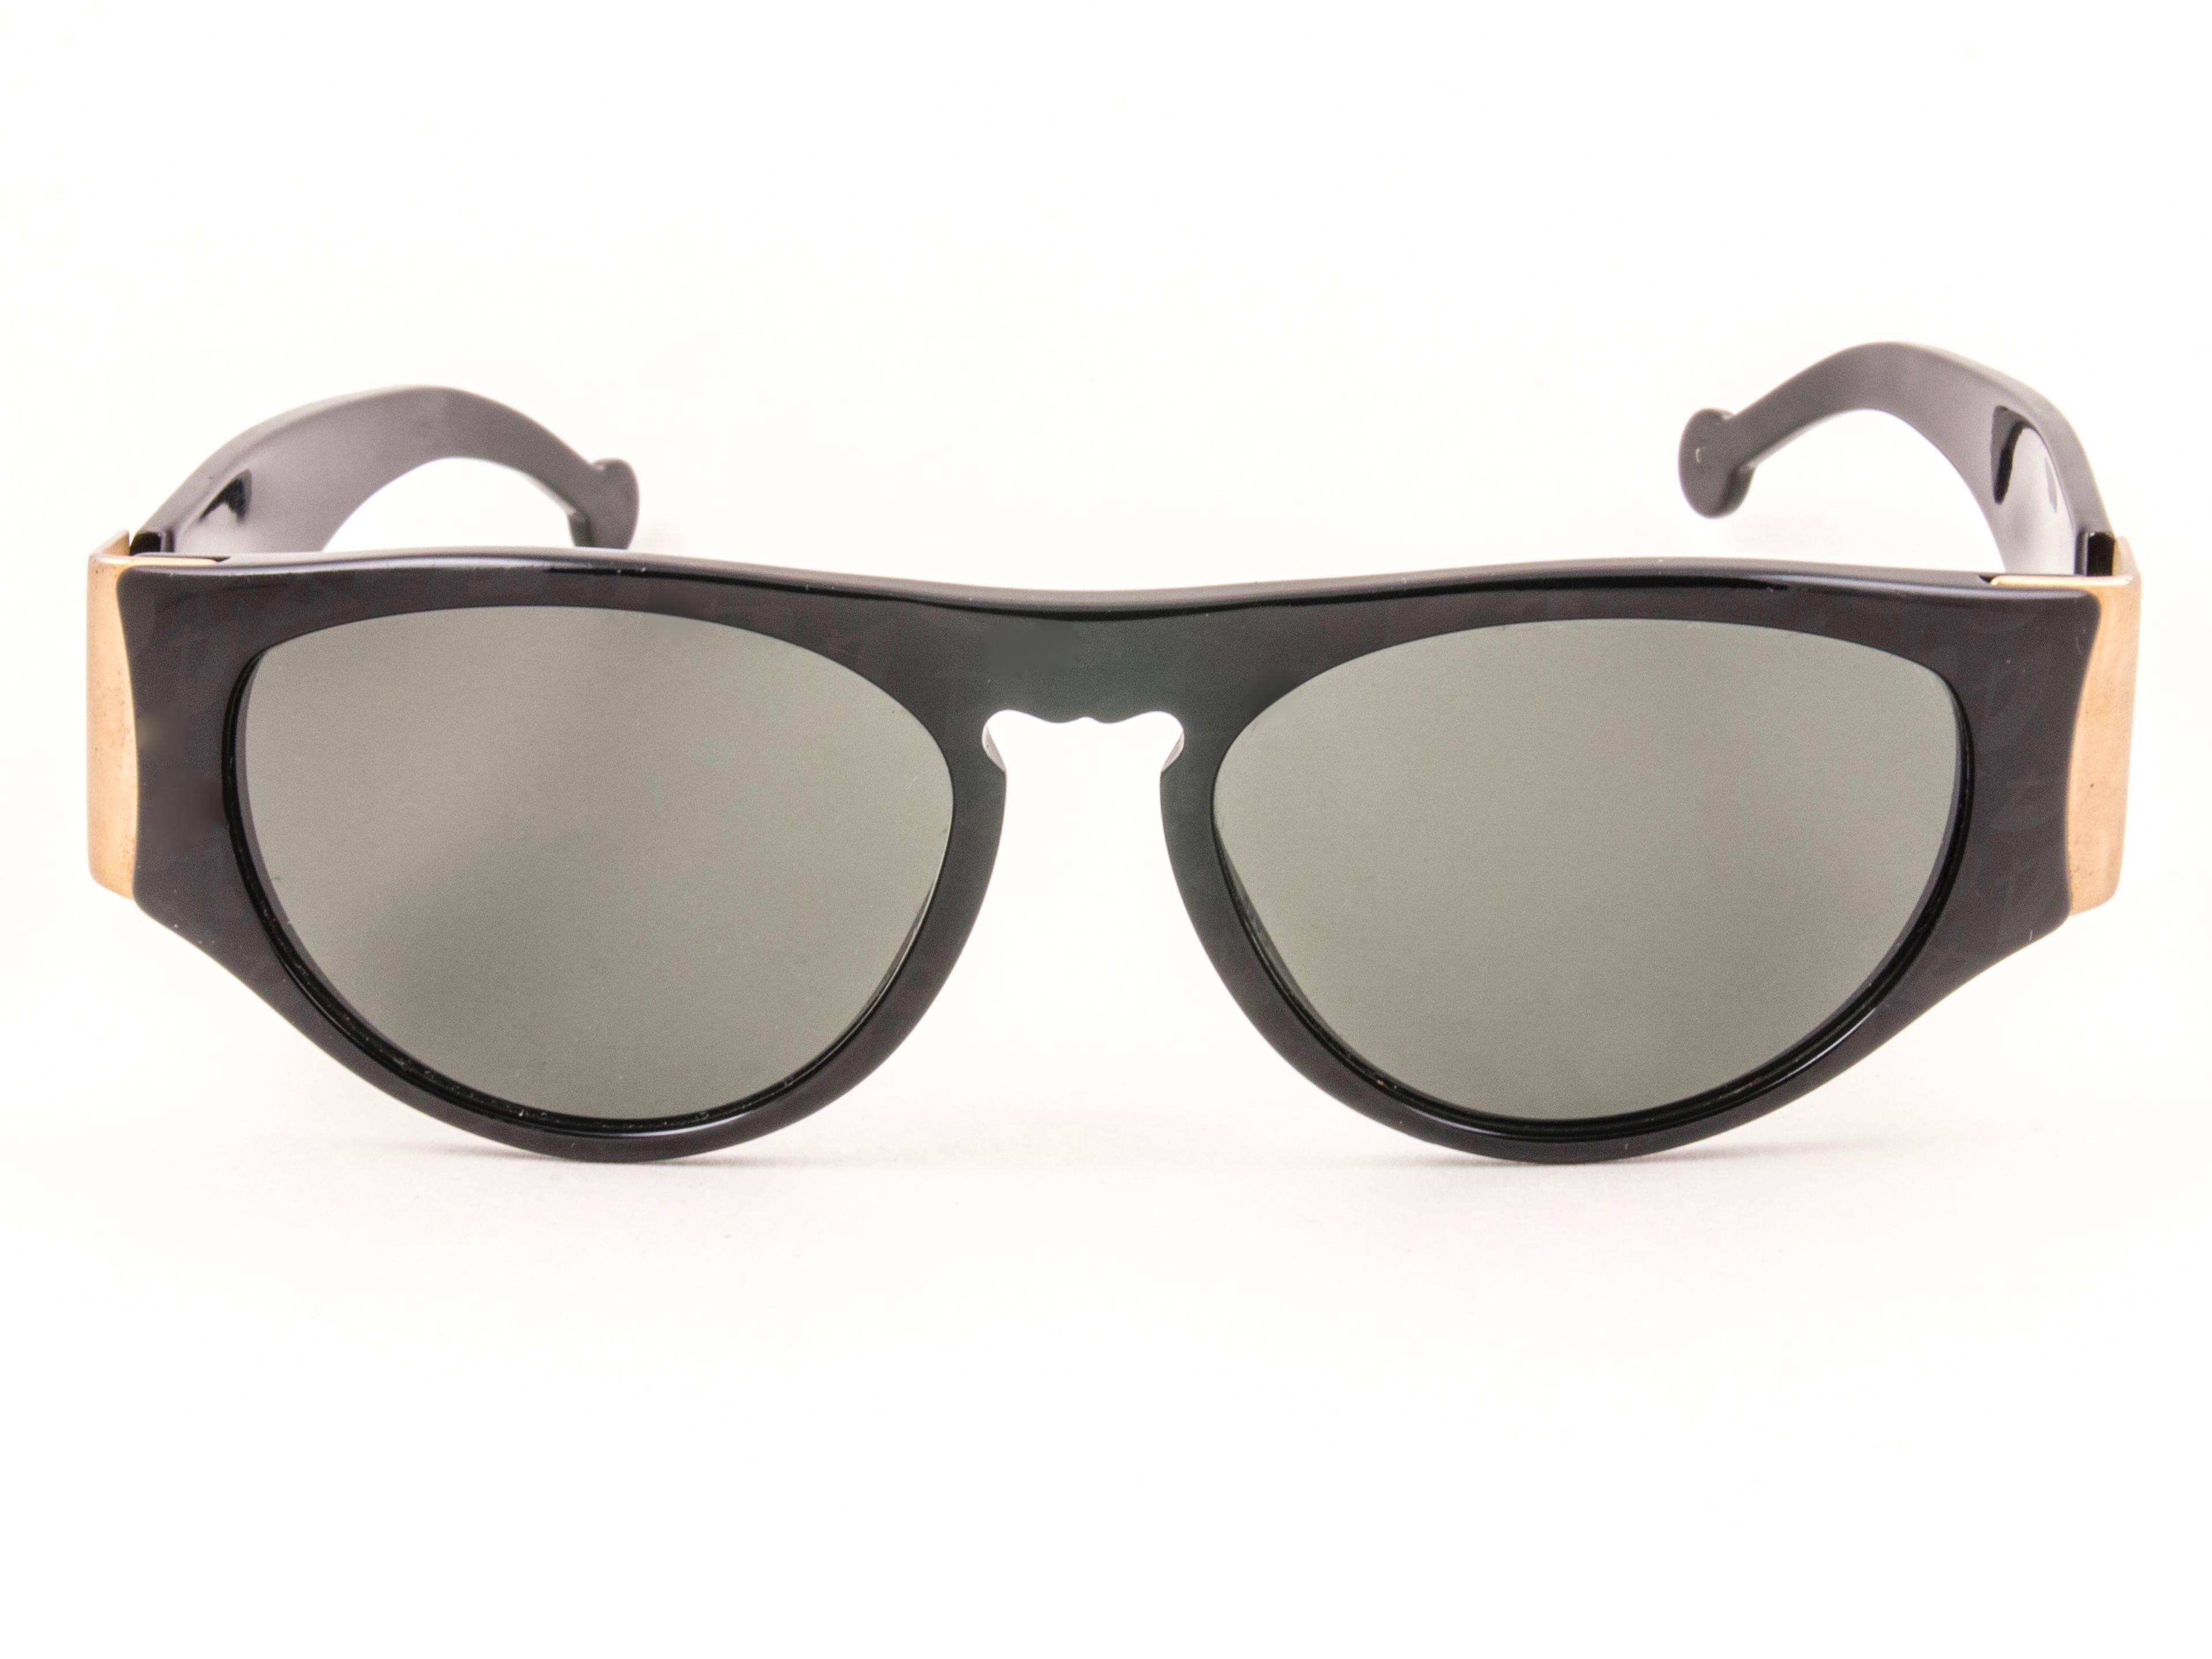 Noir Karl Lagerfeld lunettes de soleil vintage neuves L3606 noires et grises, Allemagne, 1990 en vente